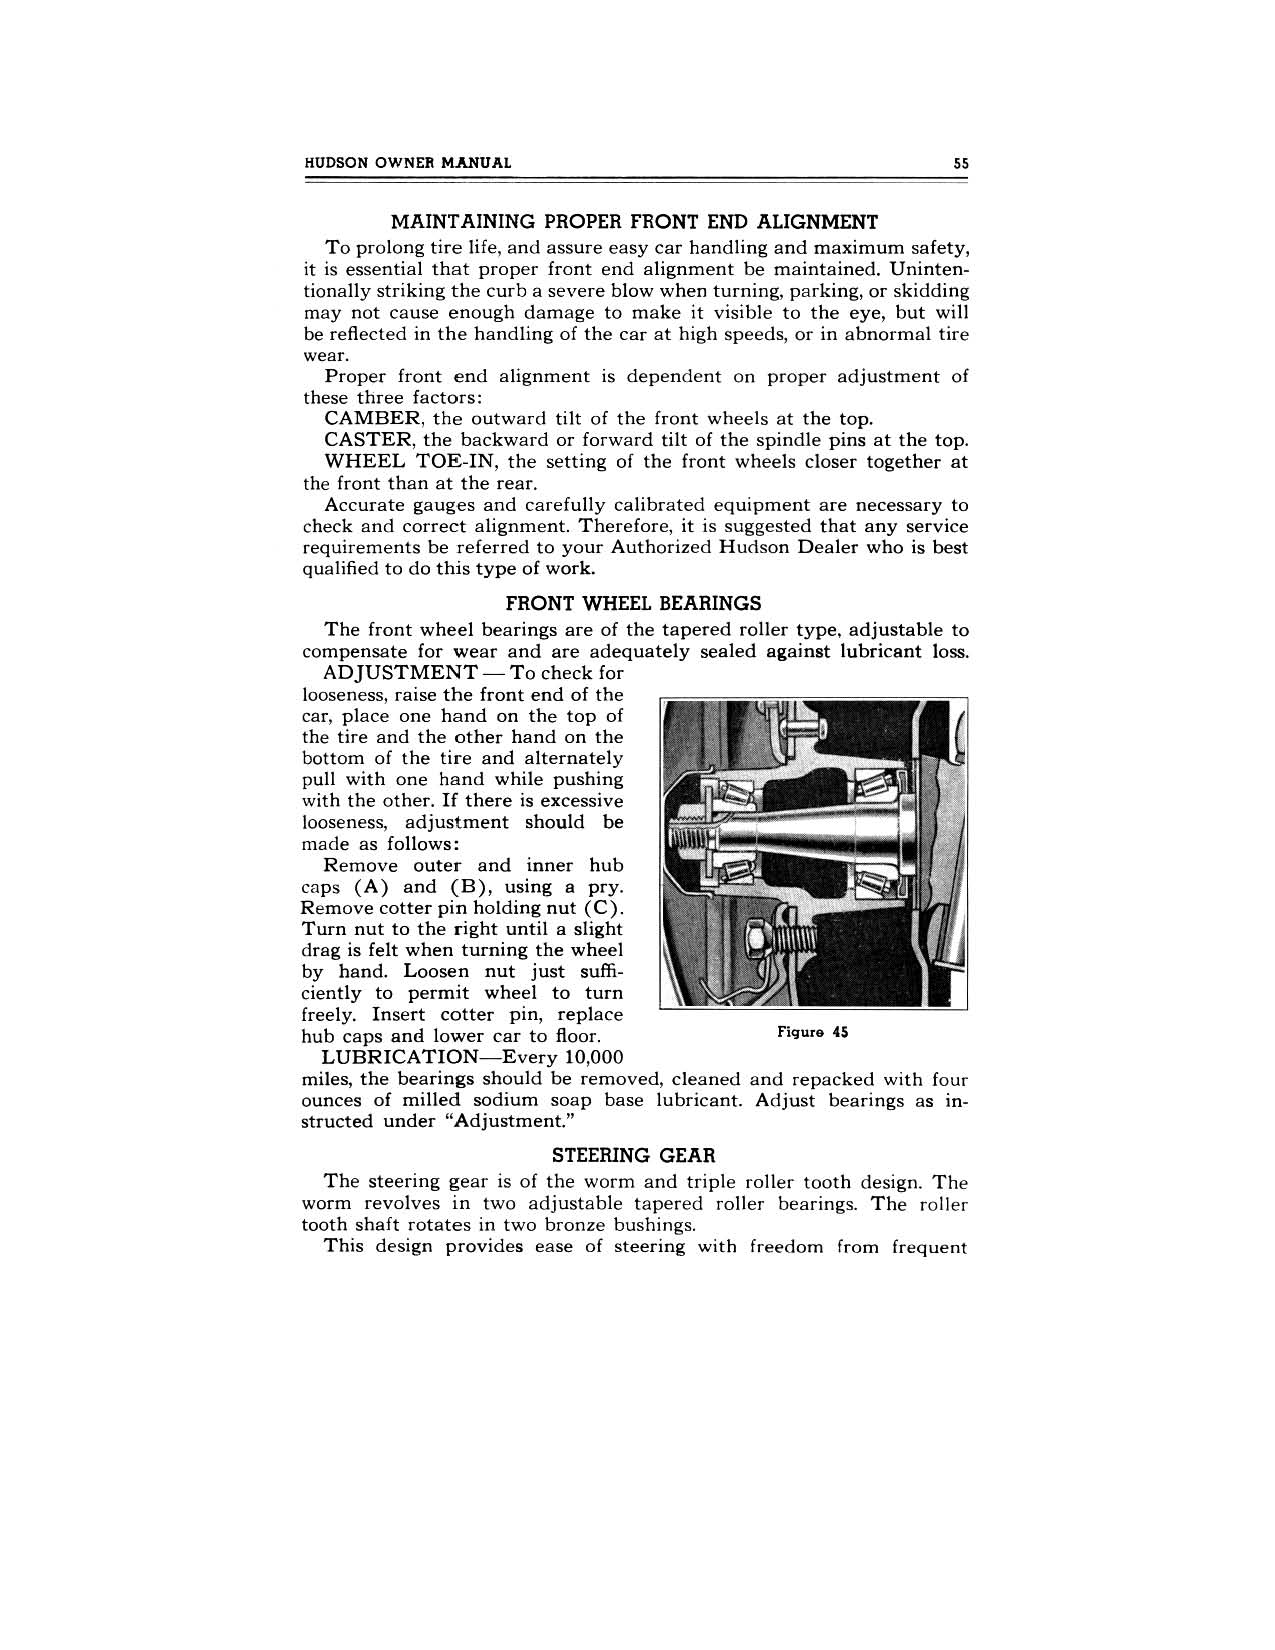 1949 Hudson Owners Manual-57